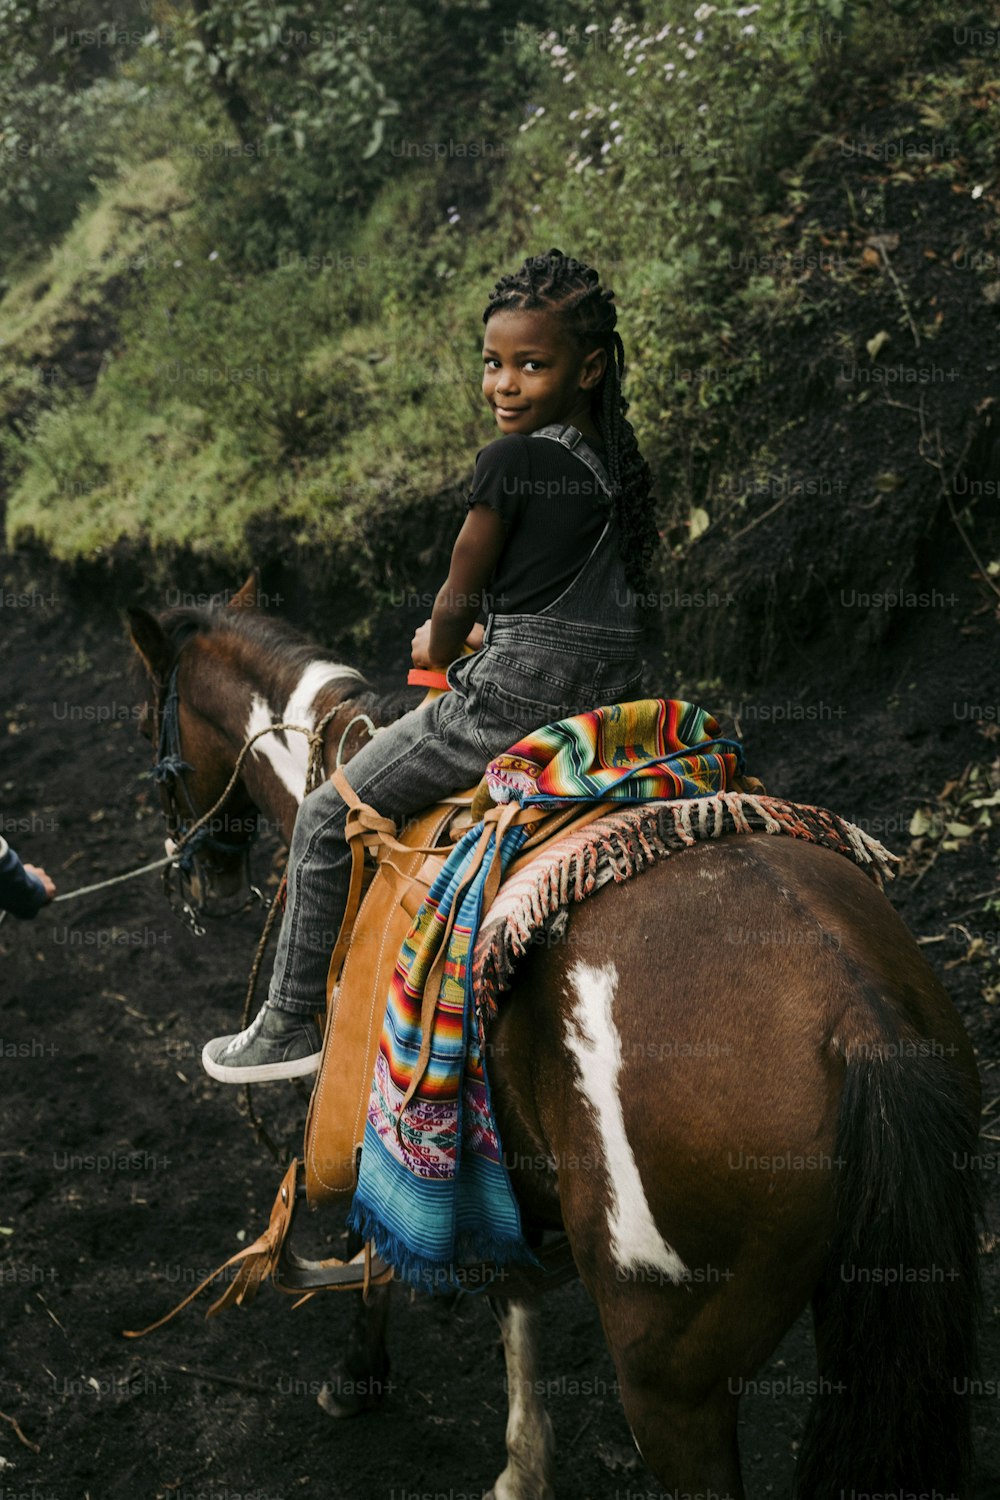 Ein kleines Mädchen, das auf dem Rücken eines braun-weißen Pferdes reitet